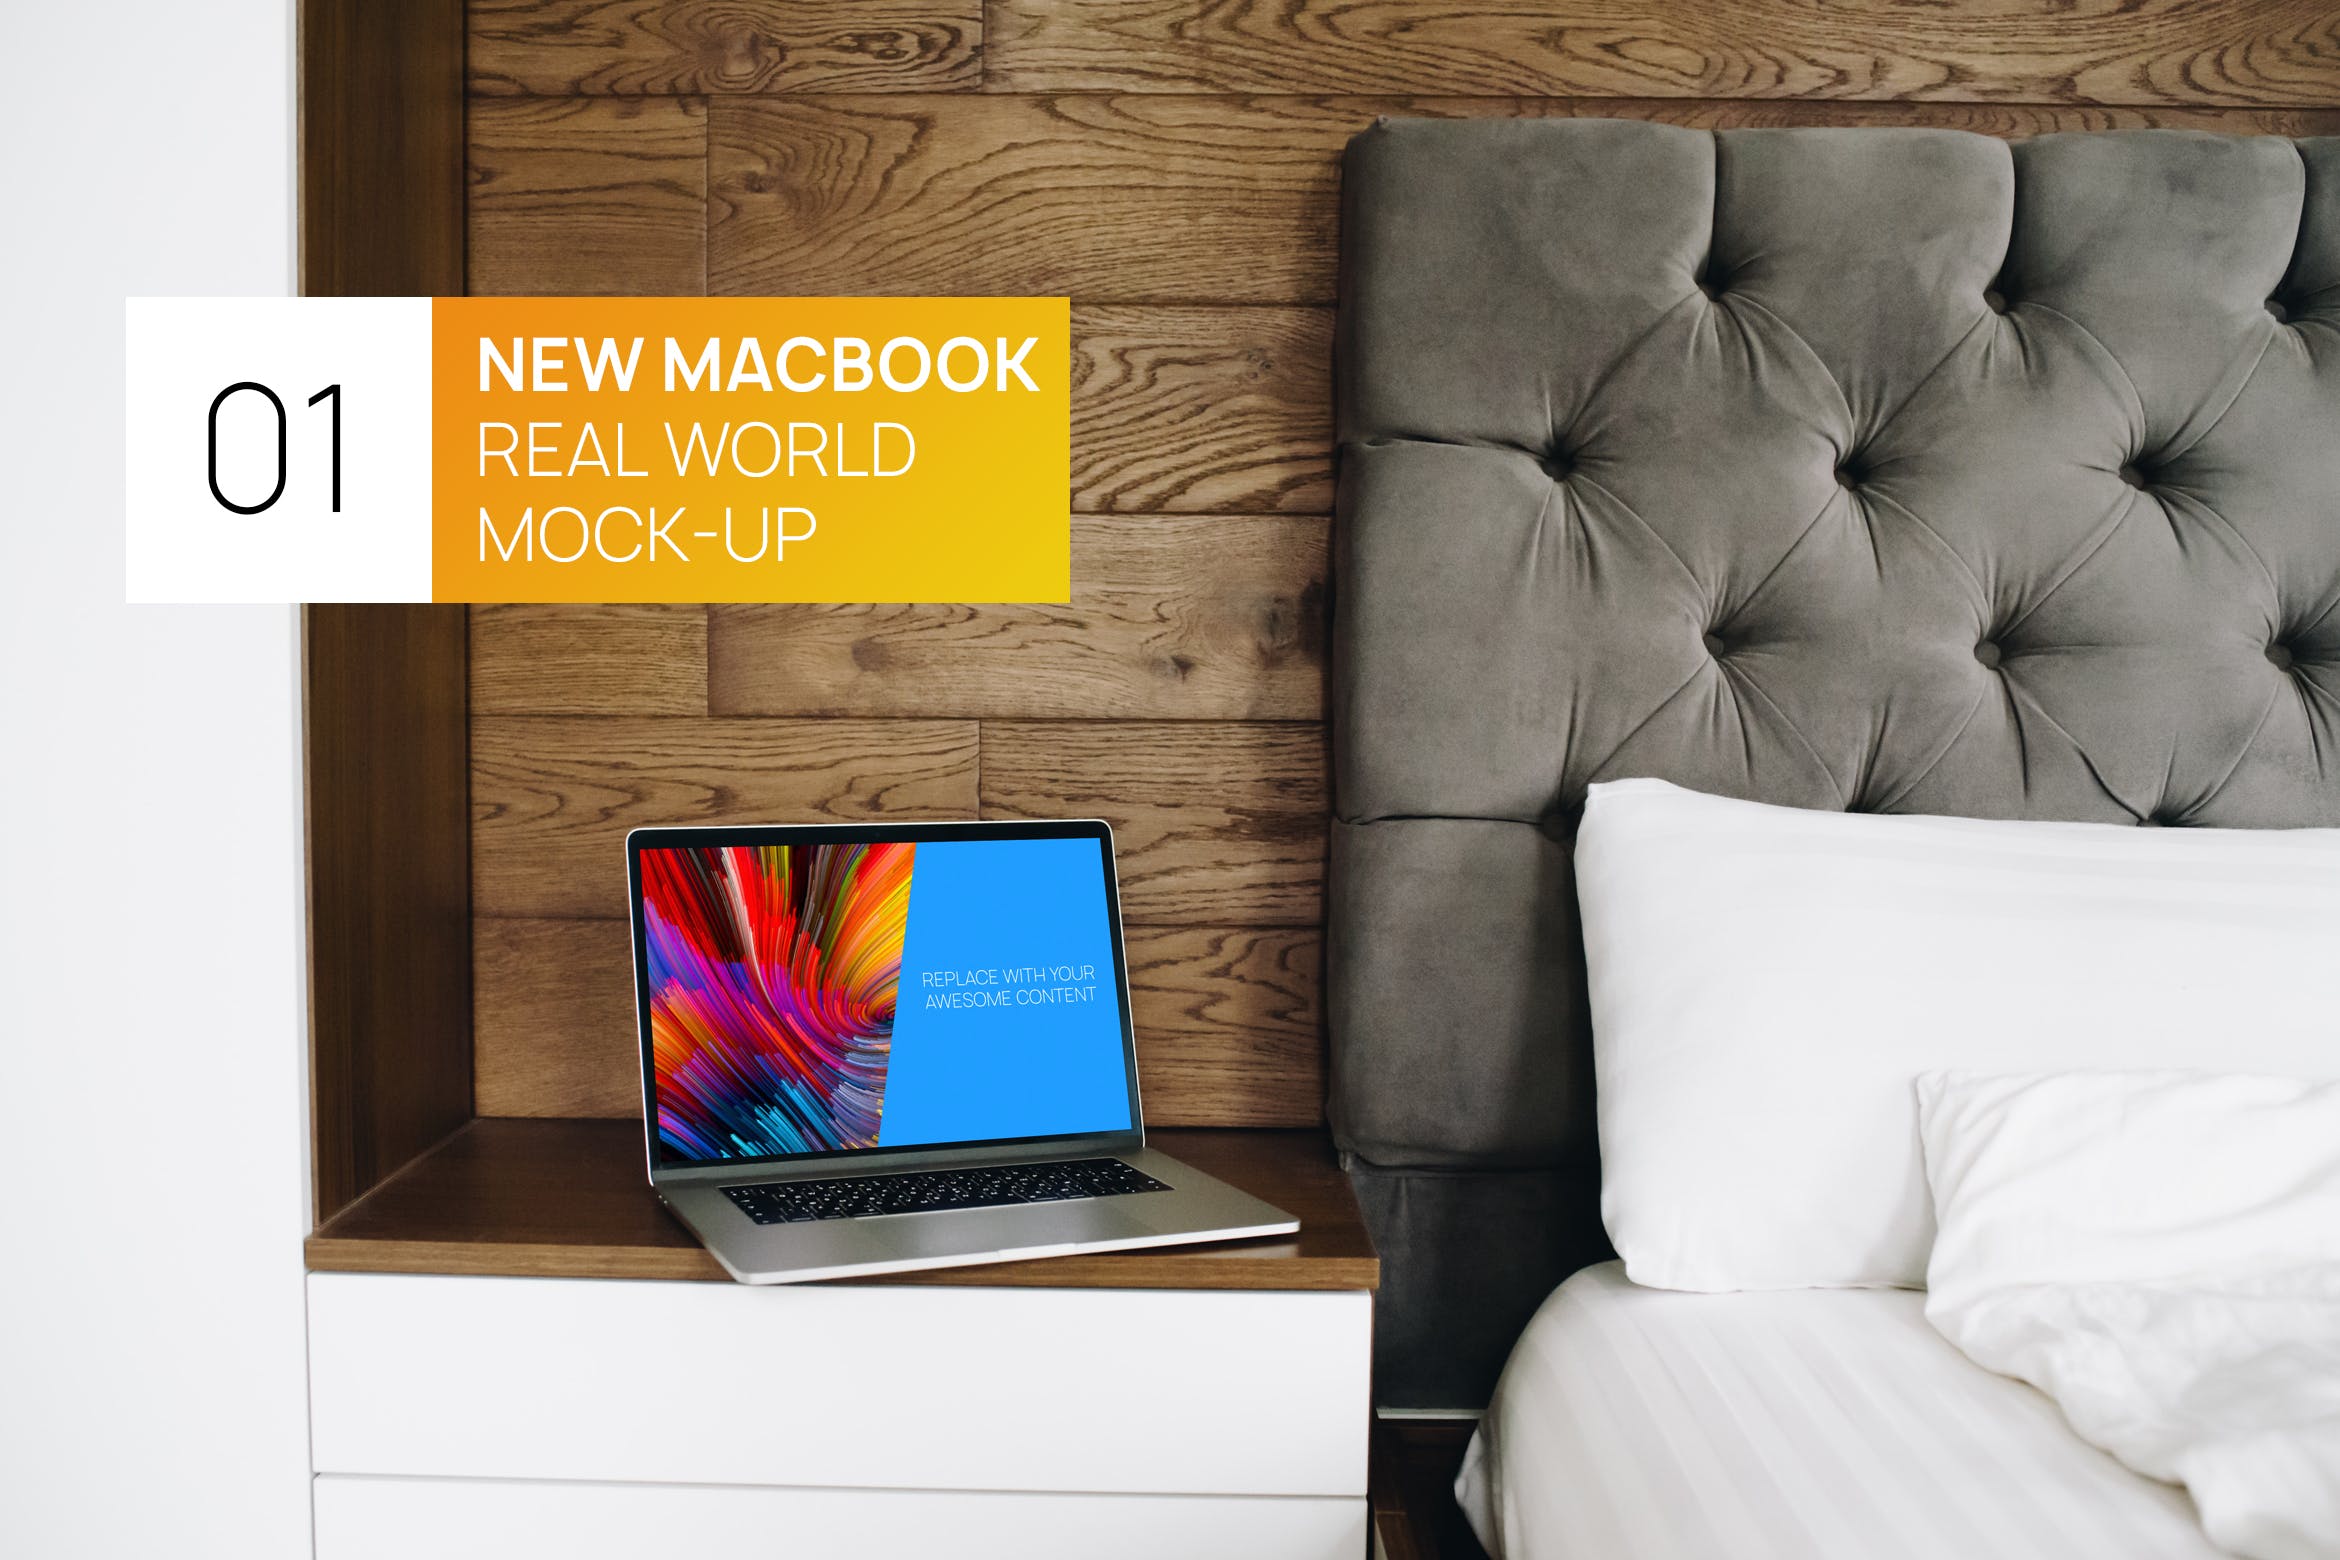 卧室场景MacBook Pro笔记本电脑屏幕演示第一素材精选样机 Interior MacBook Pro Touchbar Real World Mock-up插图